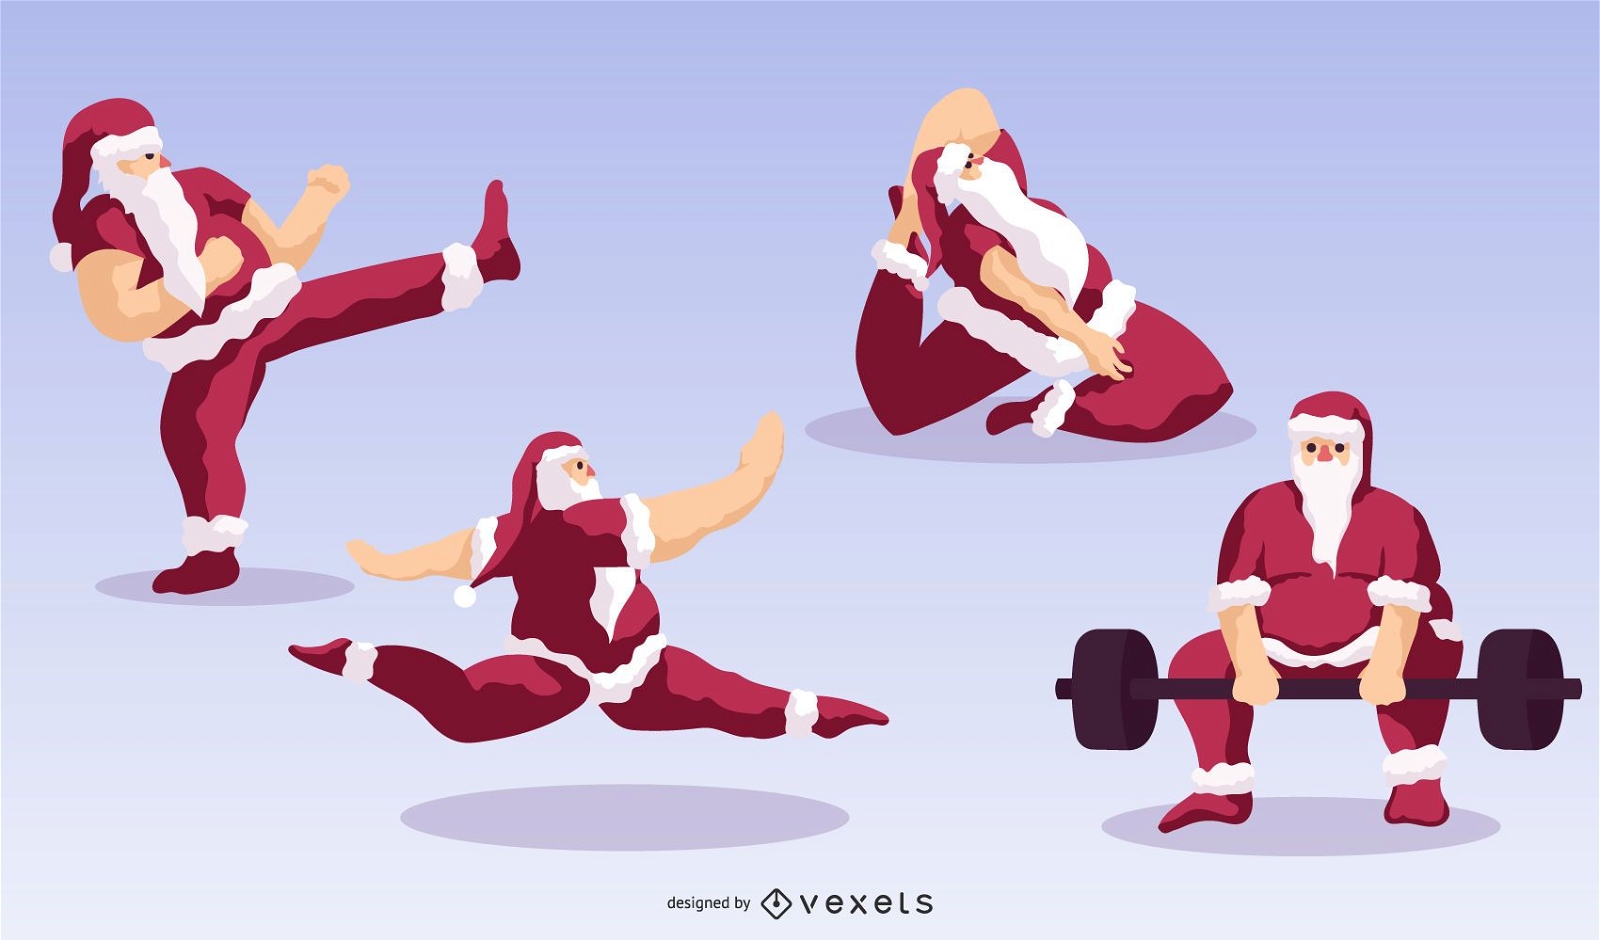 Paquete de personajes deportivos de Santa Claus